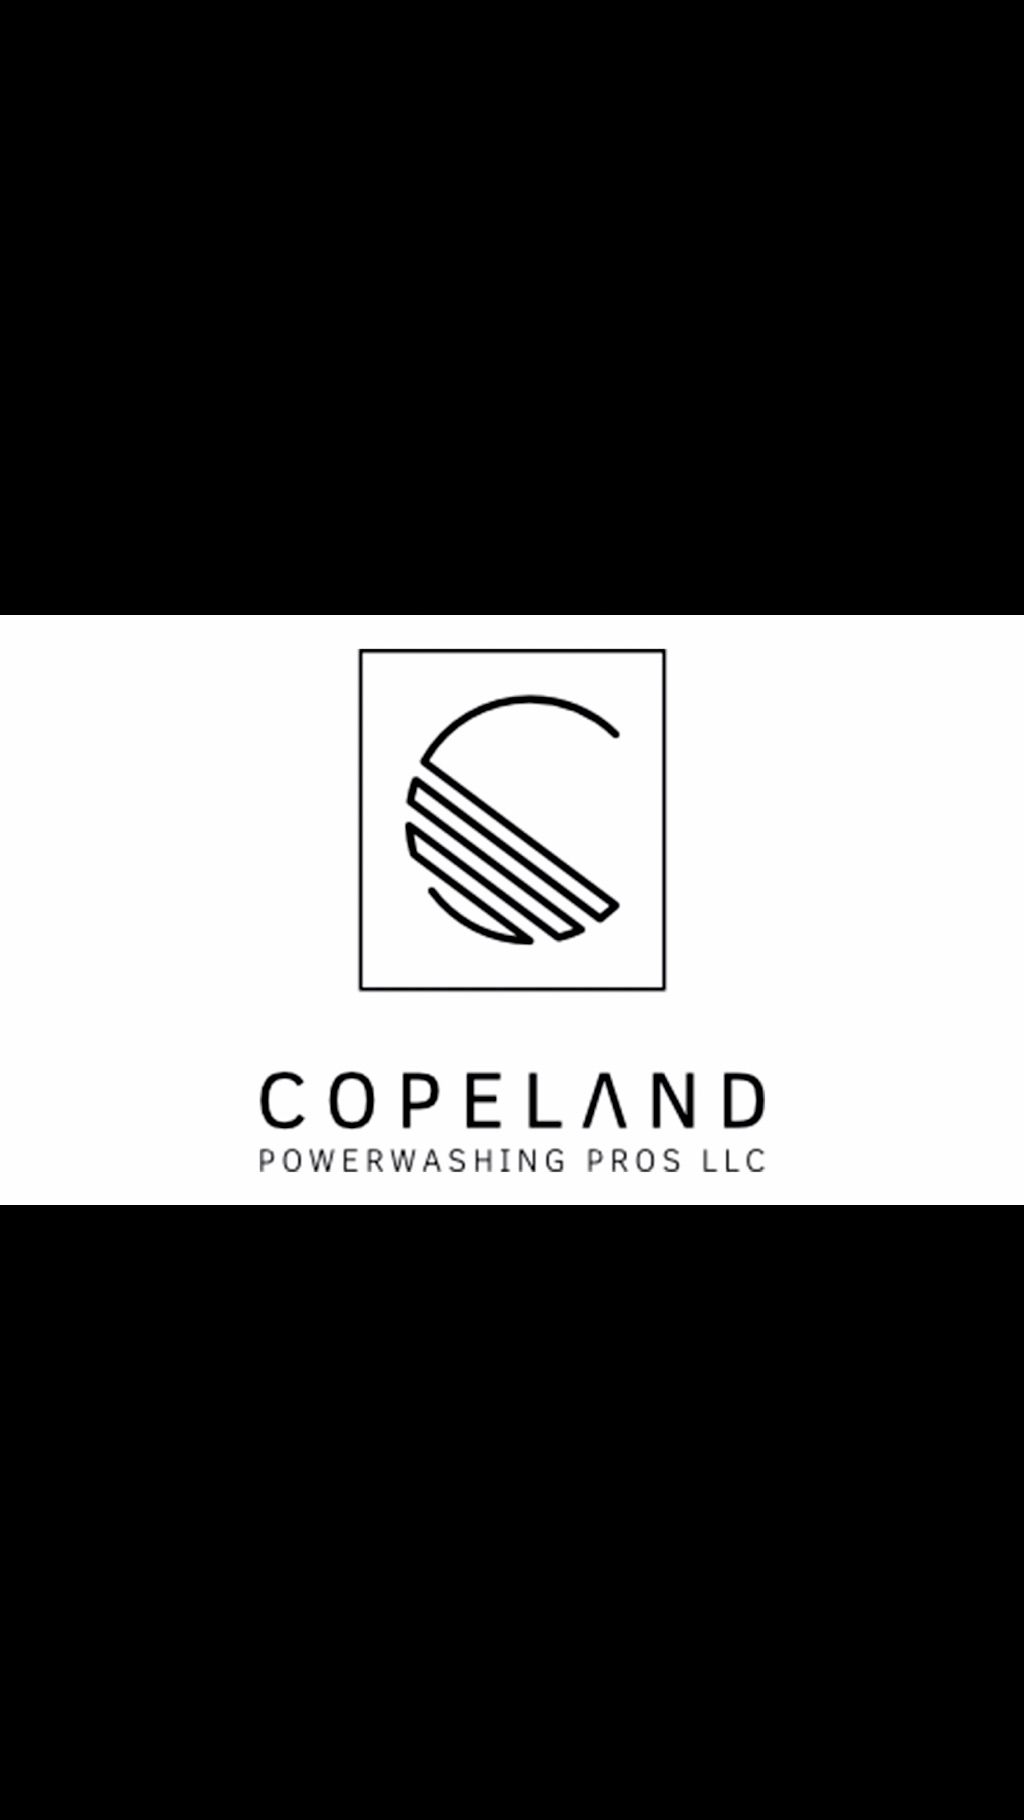 Copeland Powerwashing Pros LLC